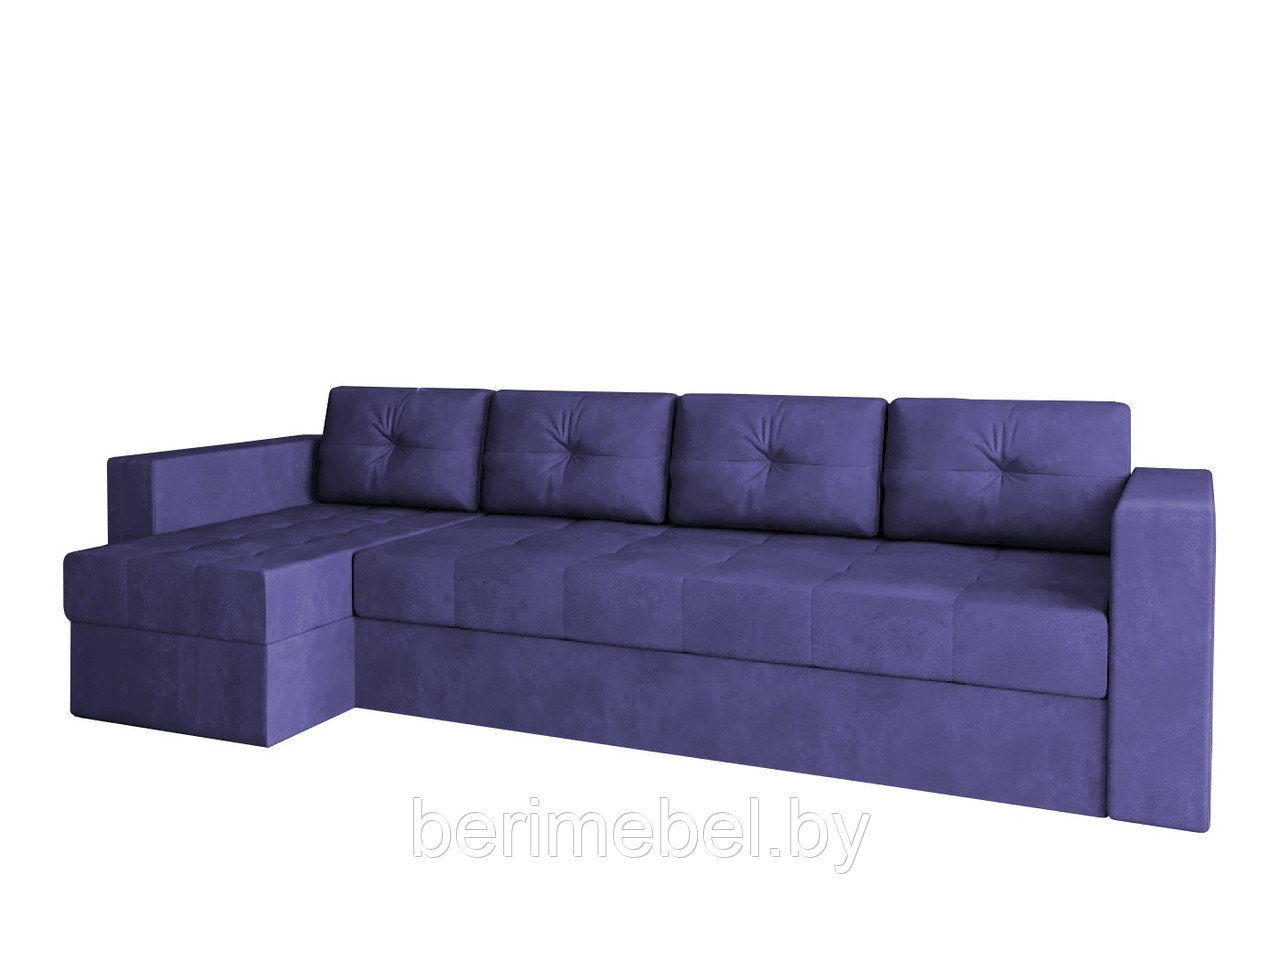 Угловой диван Константин макси фиолетовый вельвет